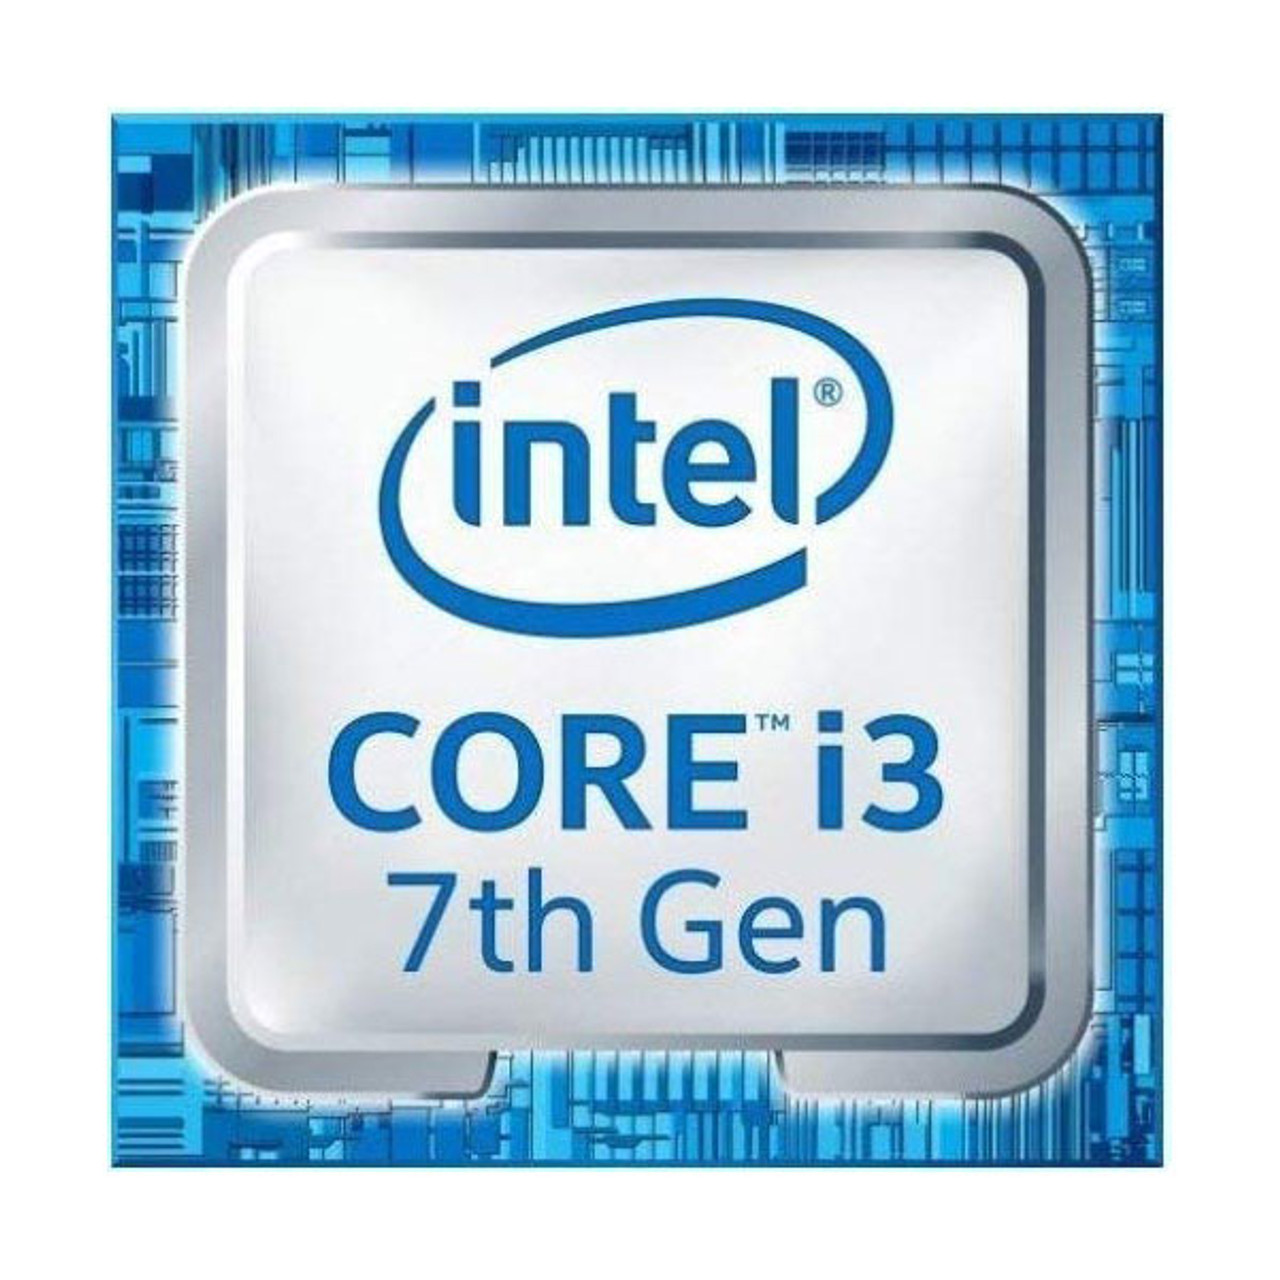 Hilsen heltinde Sømil CM8067703015913 Intel Core i3-7100T 3.4GHz OEM Desktop CPU